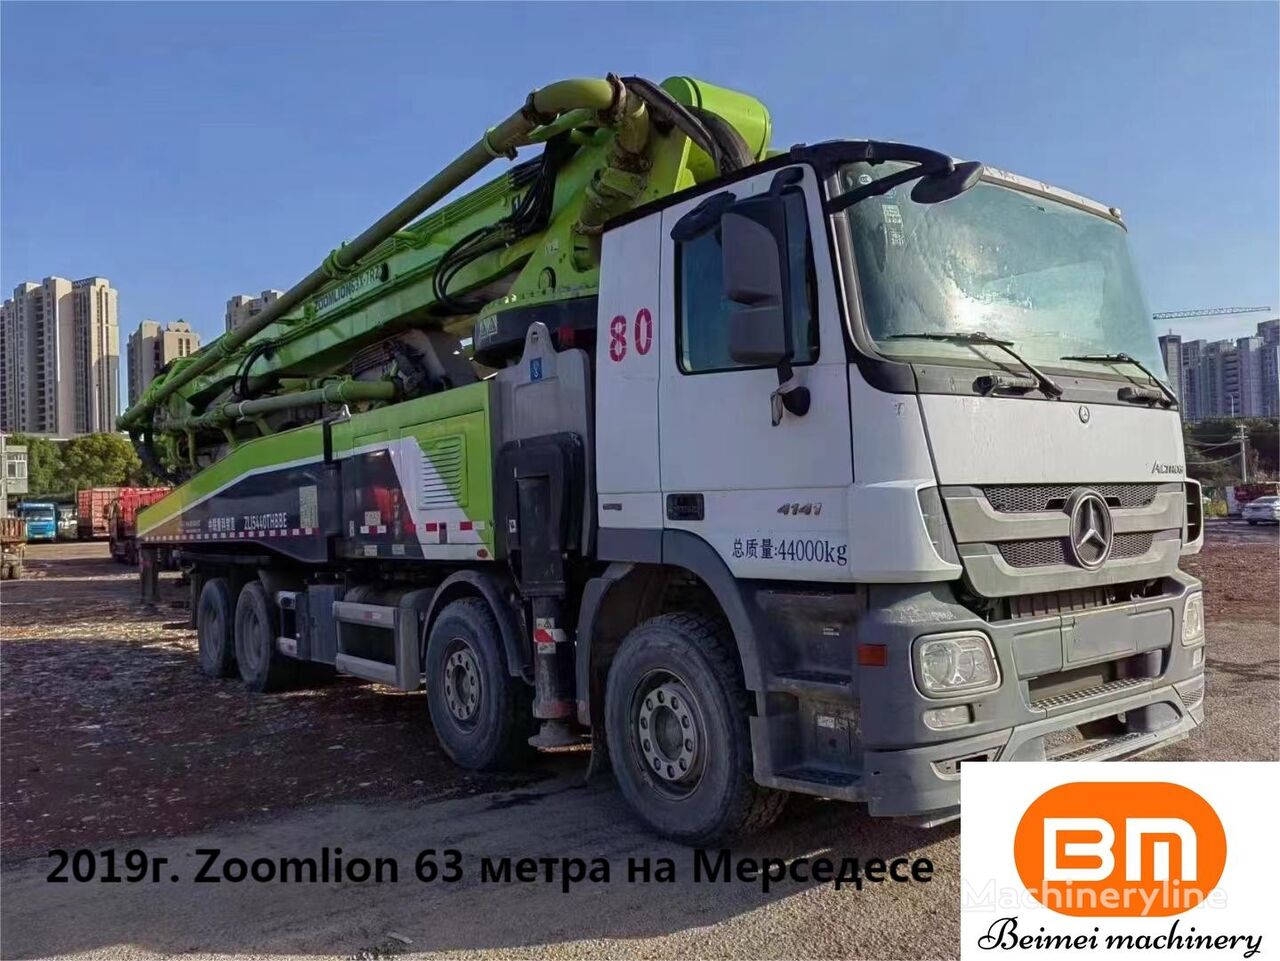 pompe à béton Zoomlion 2019 Zoomlion 63m Cement Pumping Truck  sur châssis Mercedes-Benz Benz